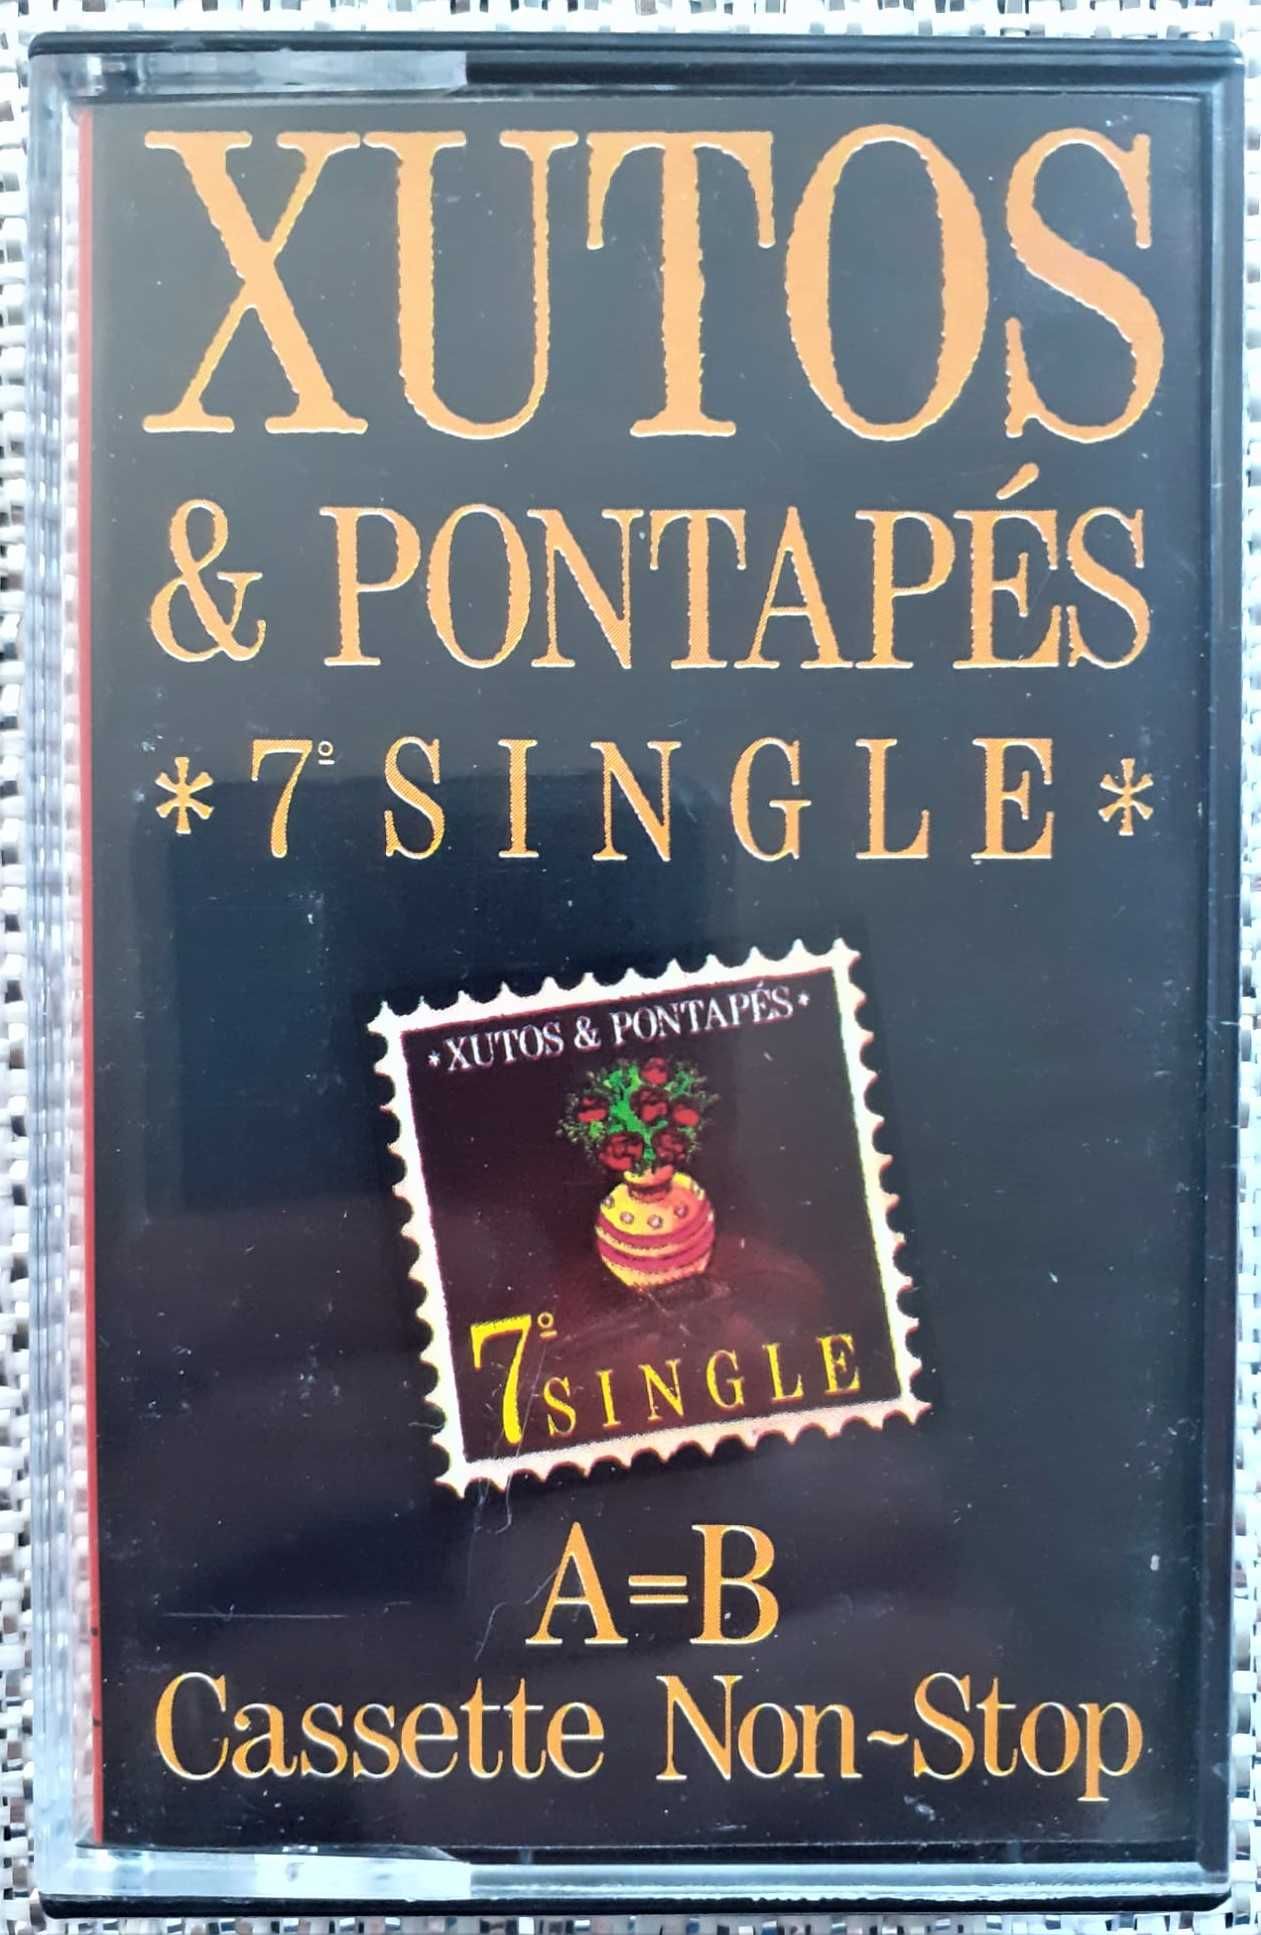 Xutos & Pontapés - 15 CDs + 4 Cassetes - Muito Bom Estado